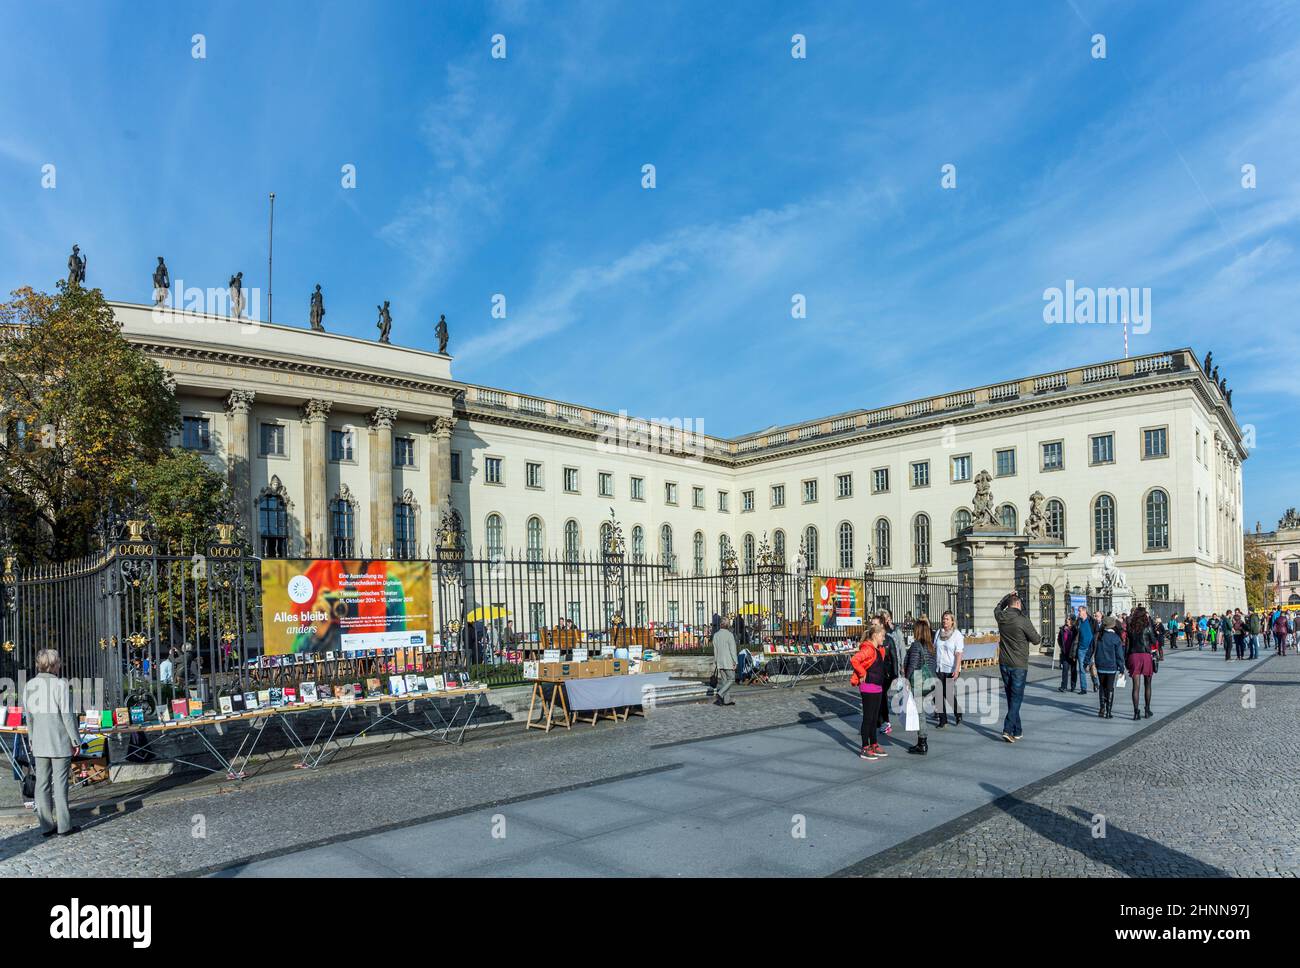 Vista dell'Università Humboldt di Berlino. L'Università Humboldt è una delle università più antiche di Berlino, fondata nel 1810. Foto Stock